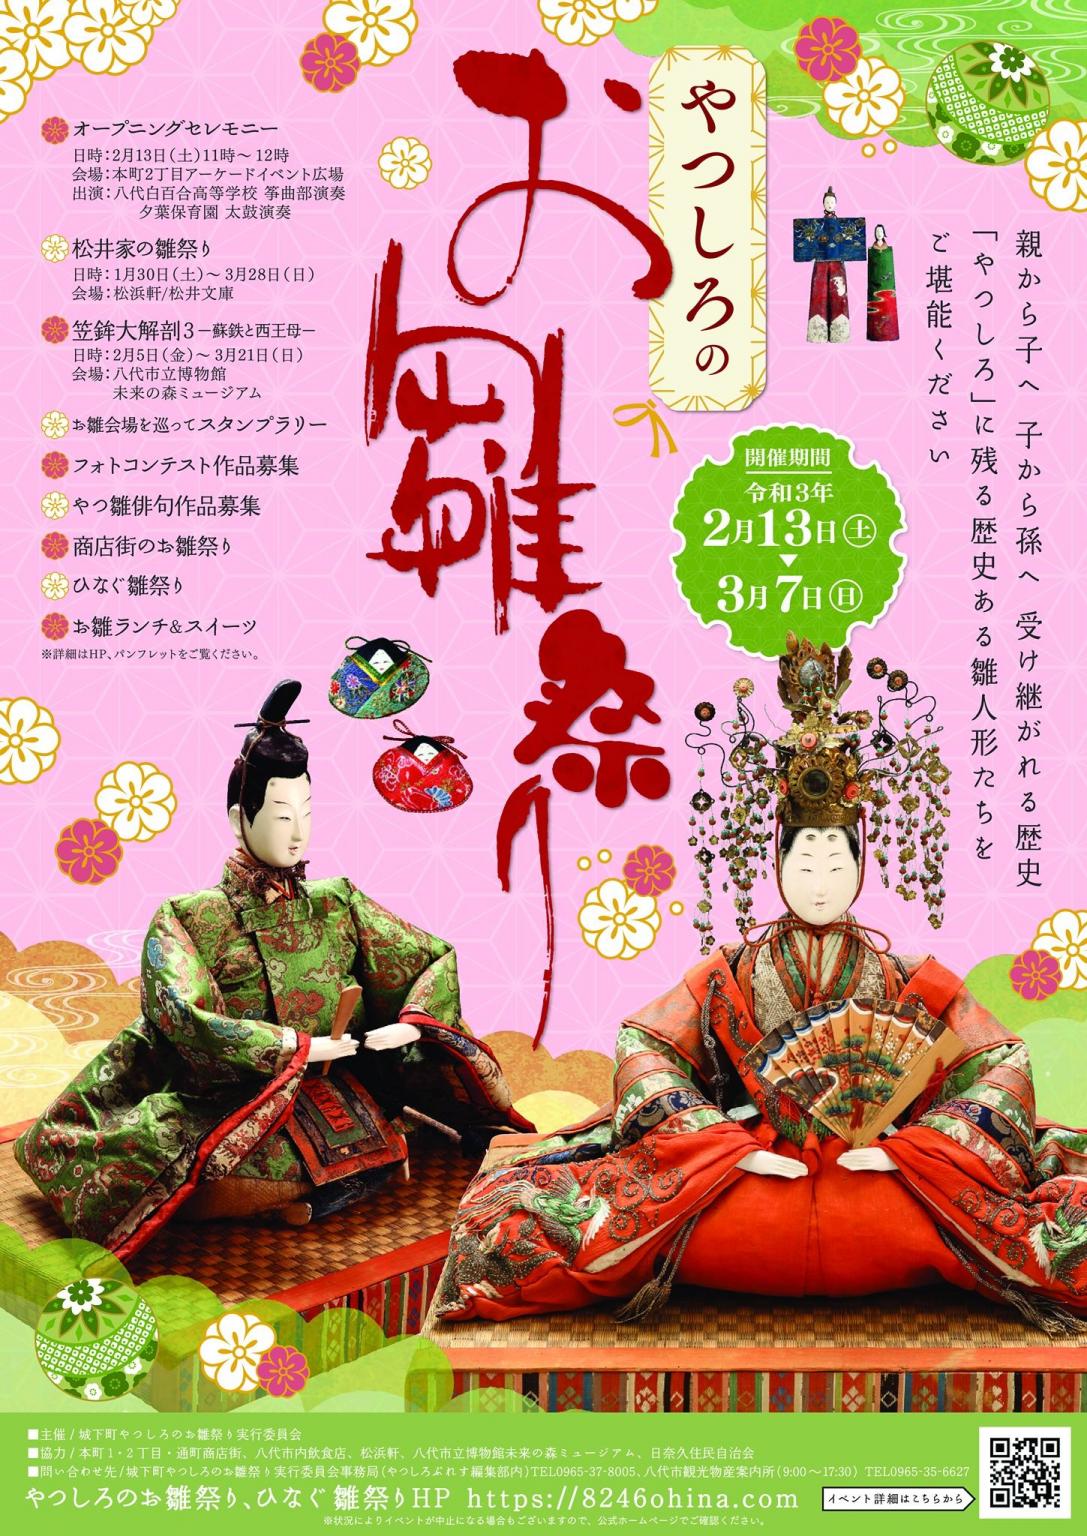 やつしろのお雛祭り イベント 公式 熊本県観光サイト もっと もーっと くまもっと